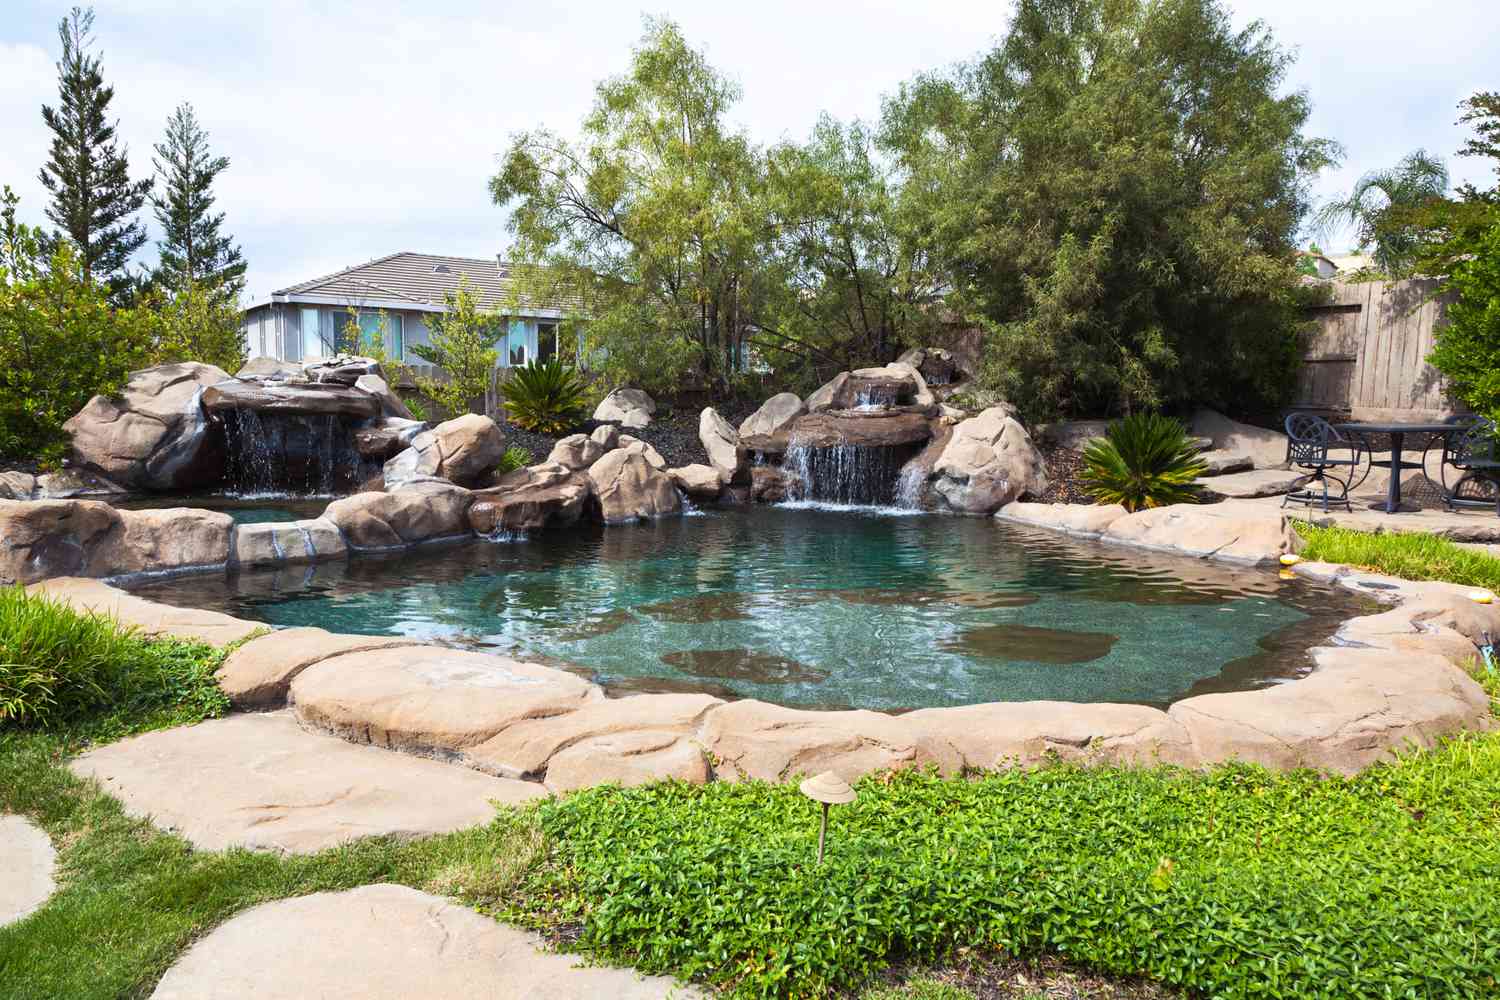 Uma piscina natural cercada por pedras e uma cachoeira de pedras.